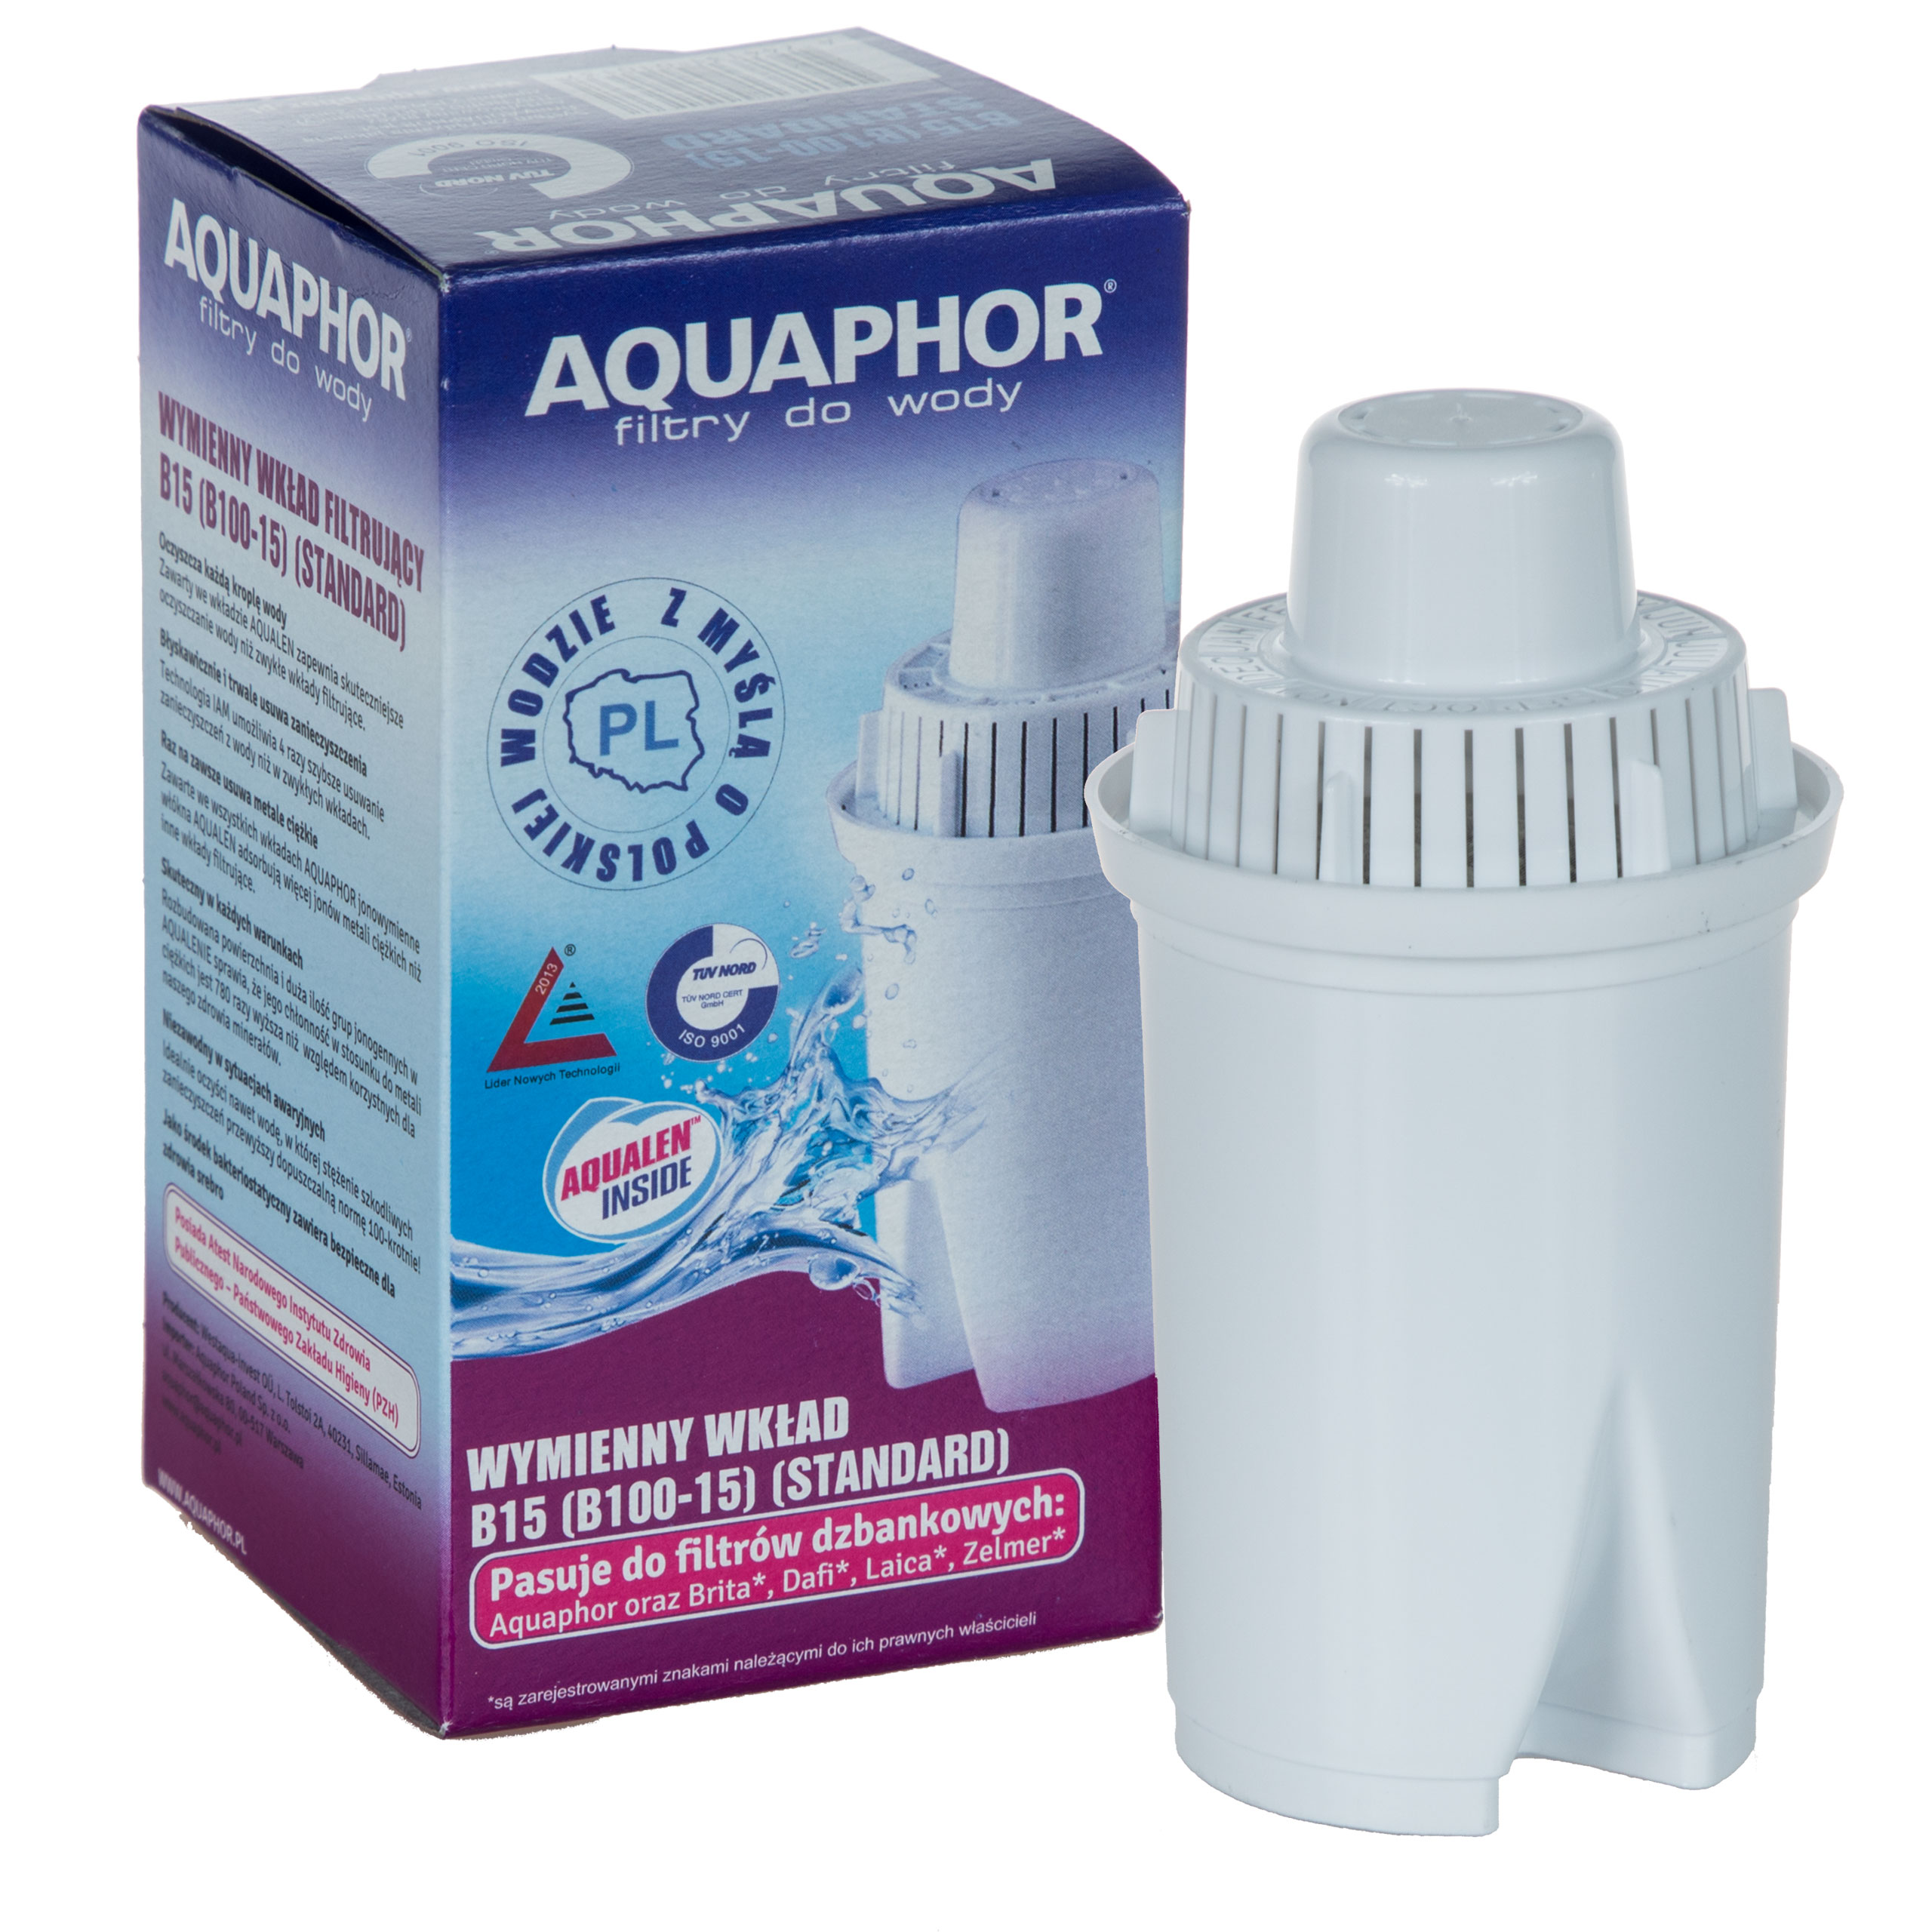 Сменный фильтр аквафор а5. Фильтр Аквафор в 100-15. Фильтр для воды Аквафор в100-15. Aquaphor Filter Cartridge b15 (b100-15). Фильтр Аквафор 100.